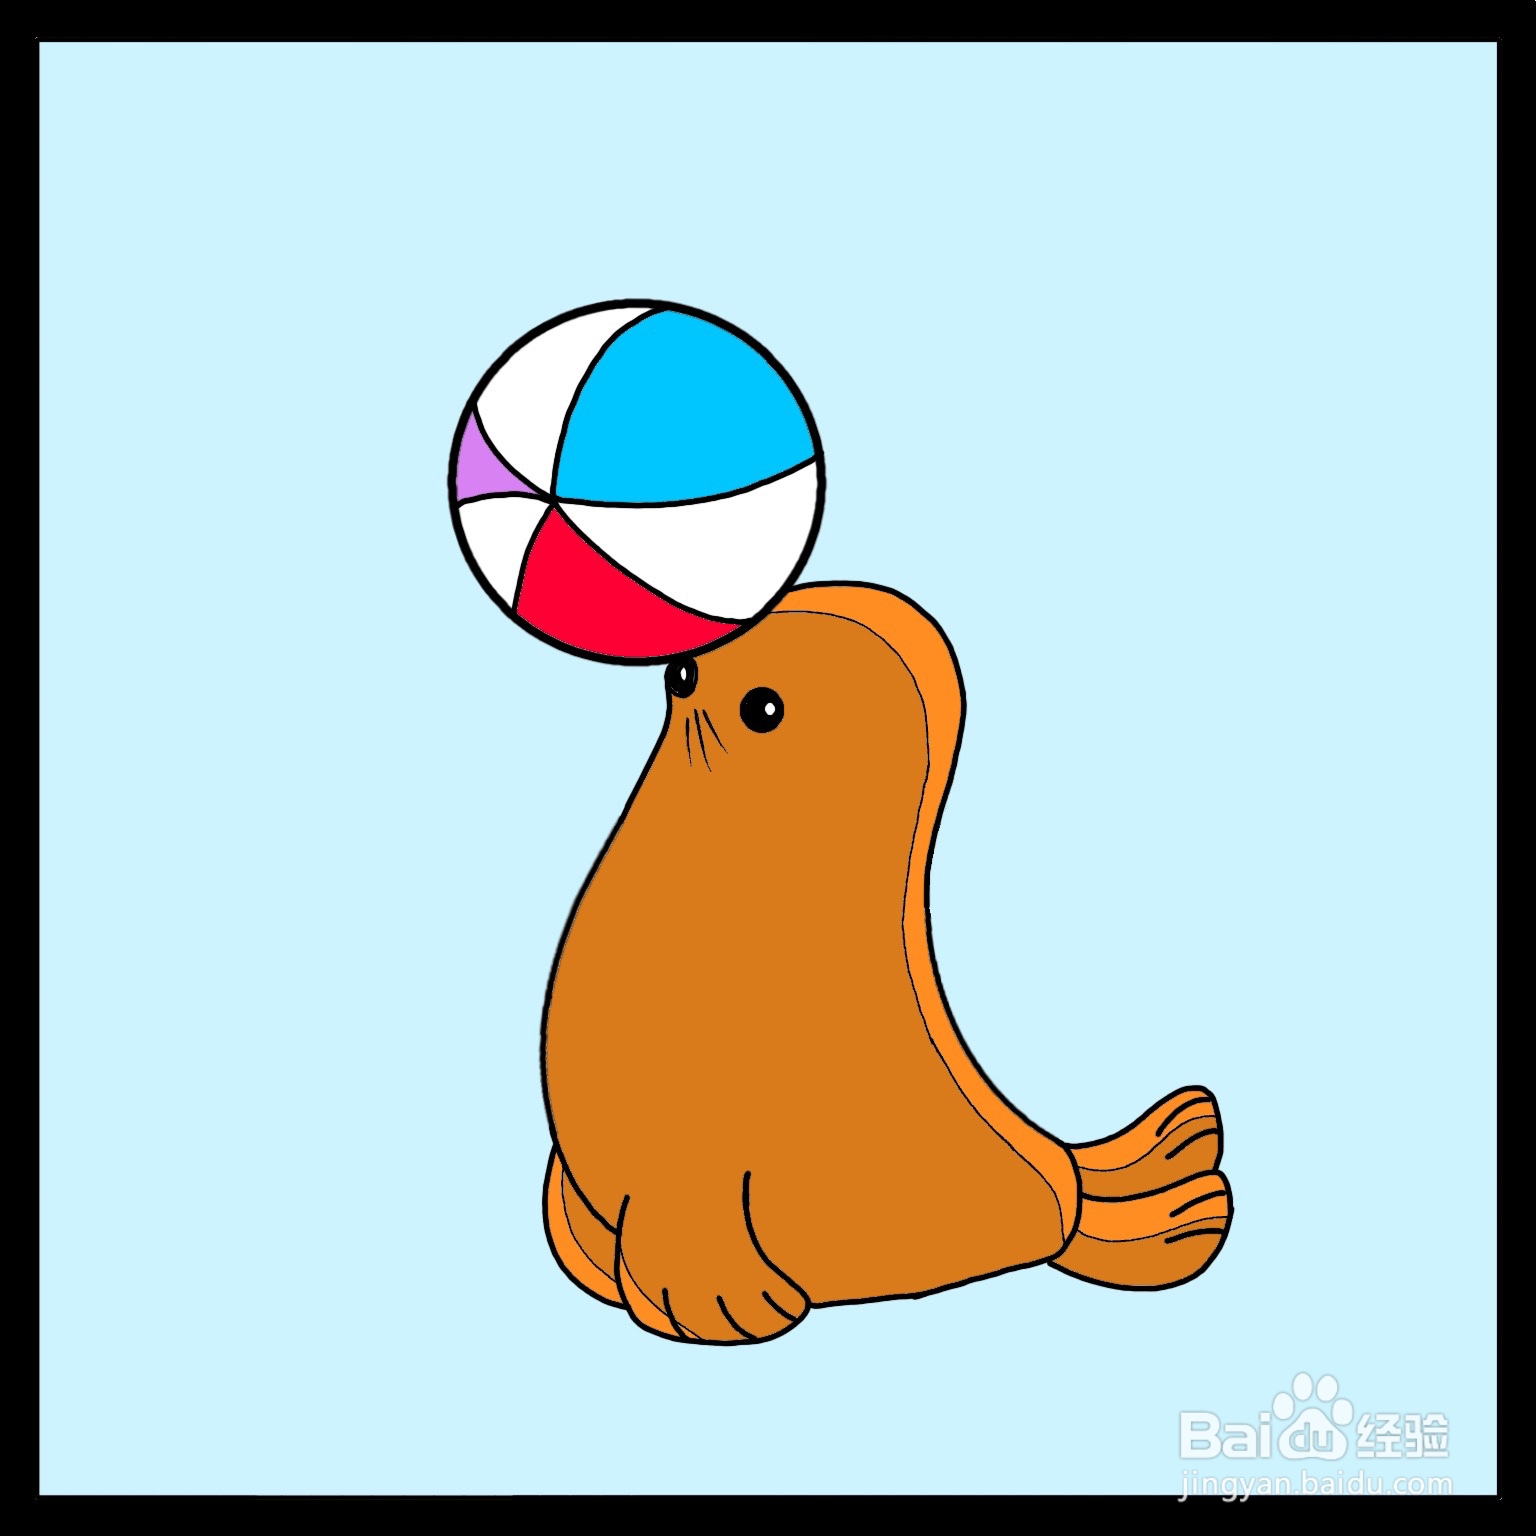 画海狮顶球图片